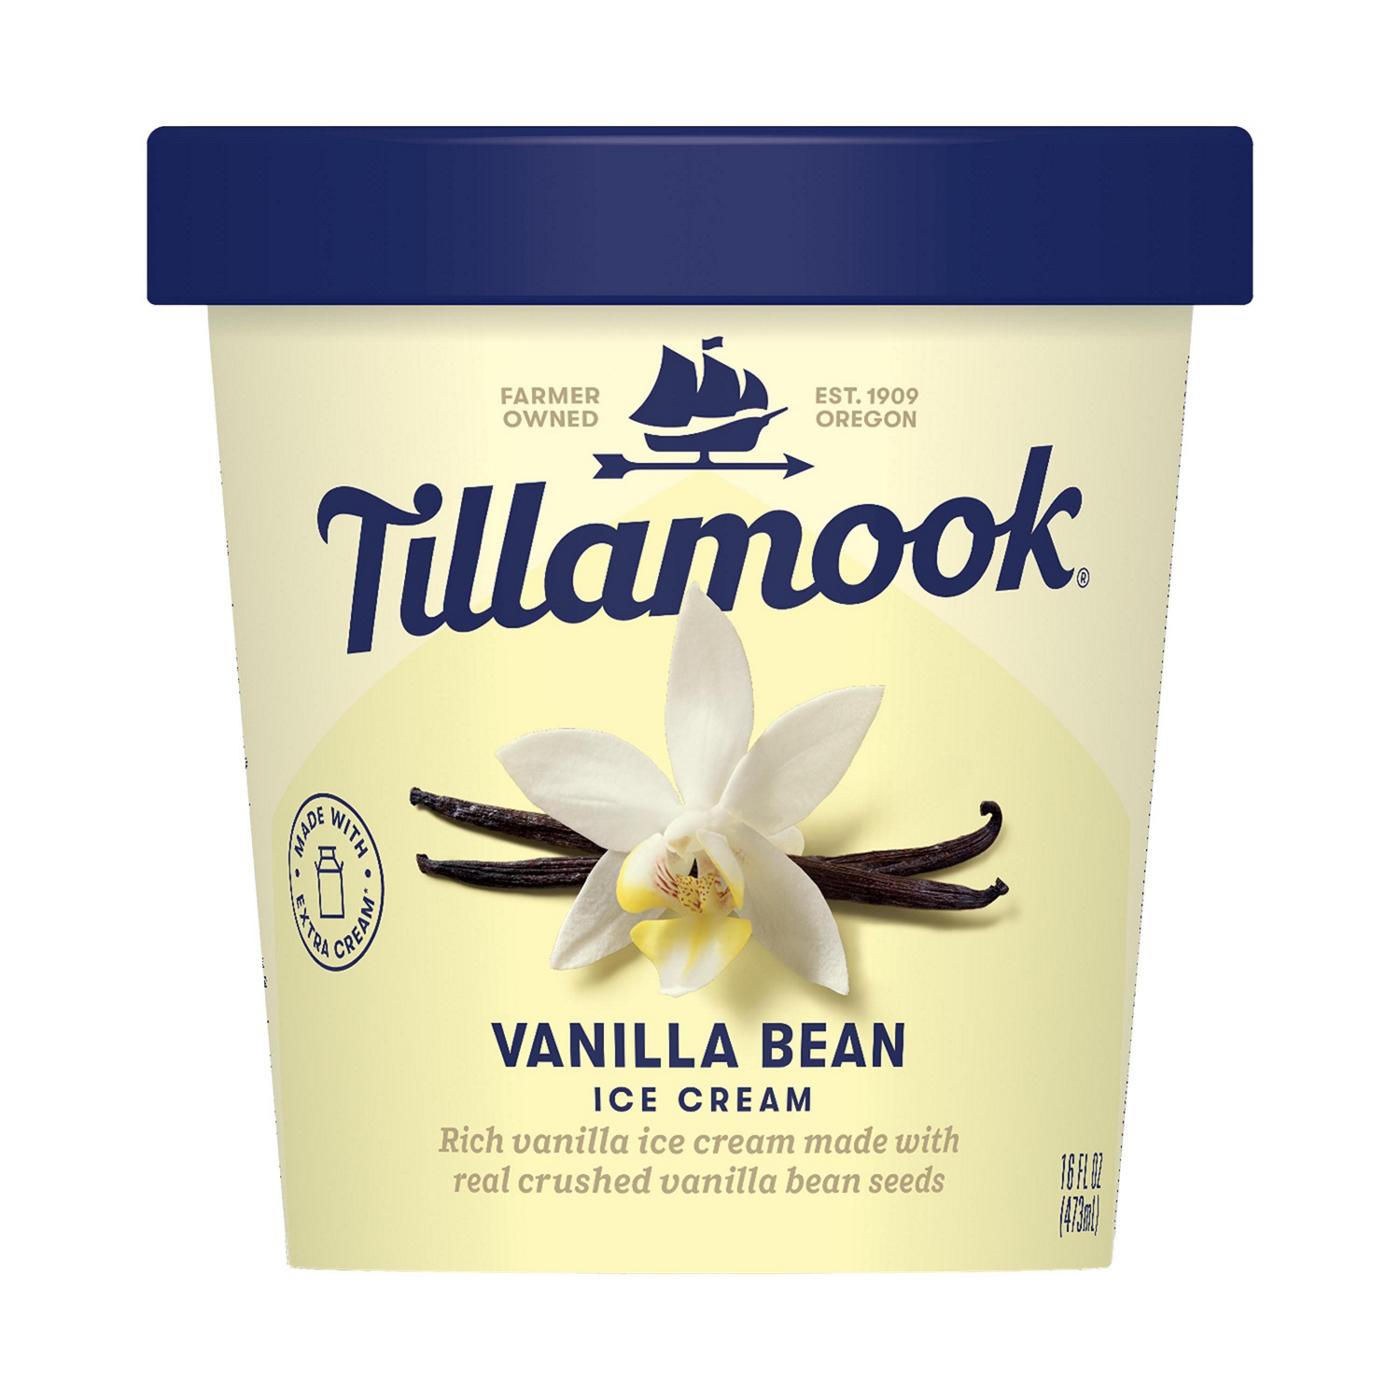 Tillamook Vanilla Bean Ice Cream; image 1 of 2